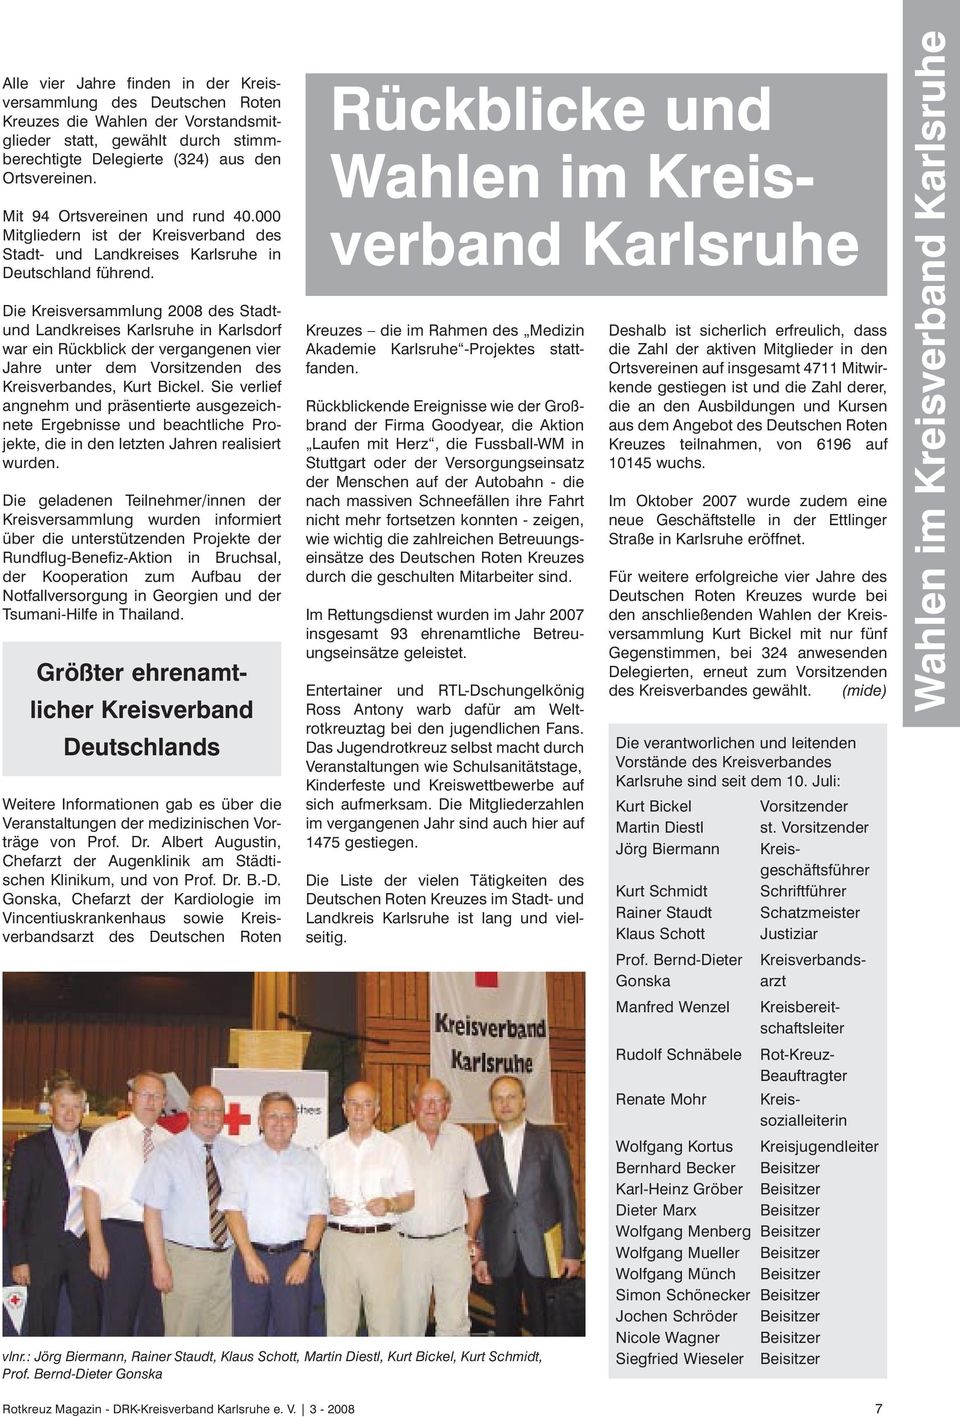 Die Kreisversammlung 2008 des Stadtund Landkreises Karlsruhe in Karlsdorf war ein Rückblick der vergangenen vier Jahre unter dem Vorsitzenden des Kreisverbandes, Kurt Bickel.